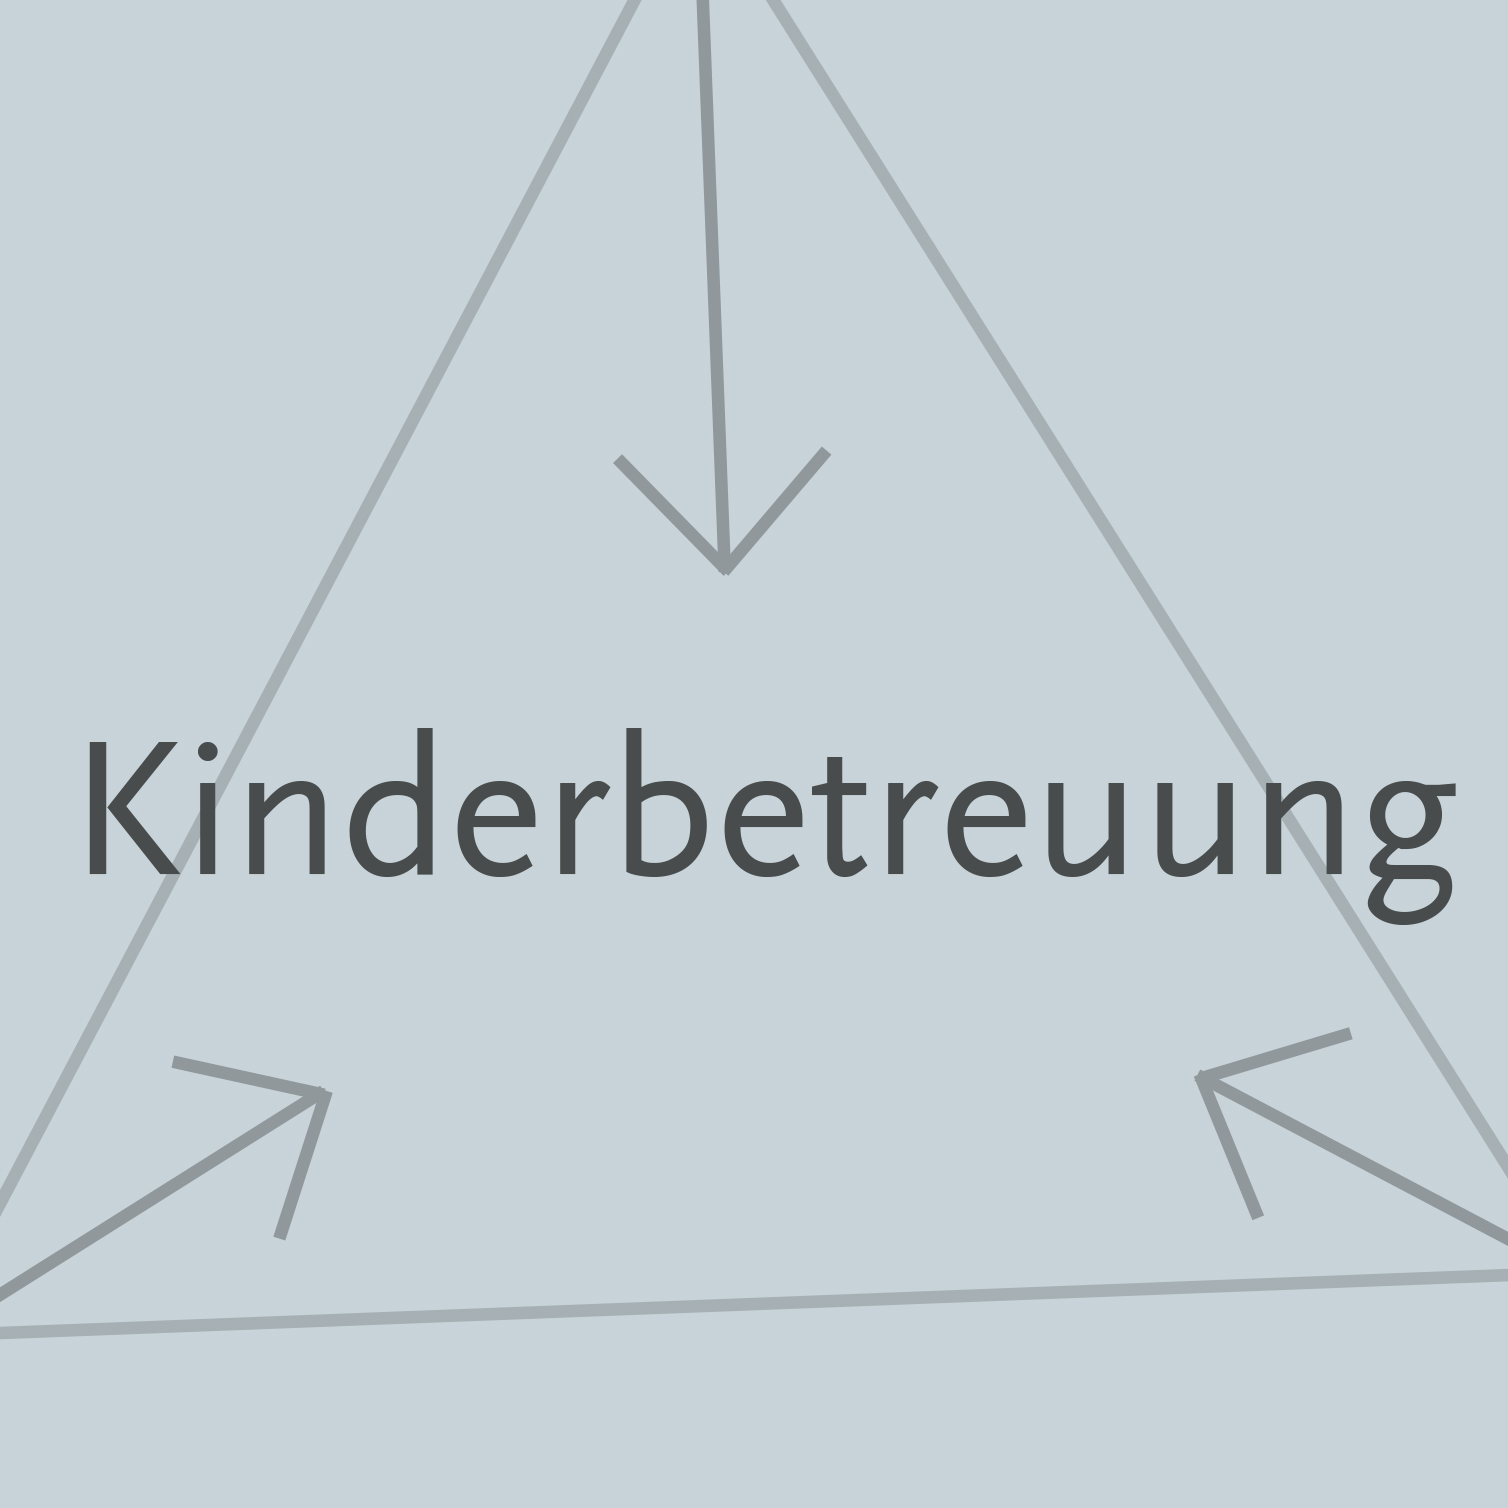 kinderbetreuung-illustration2